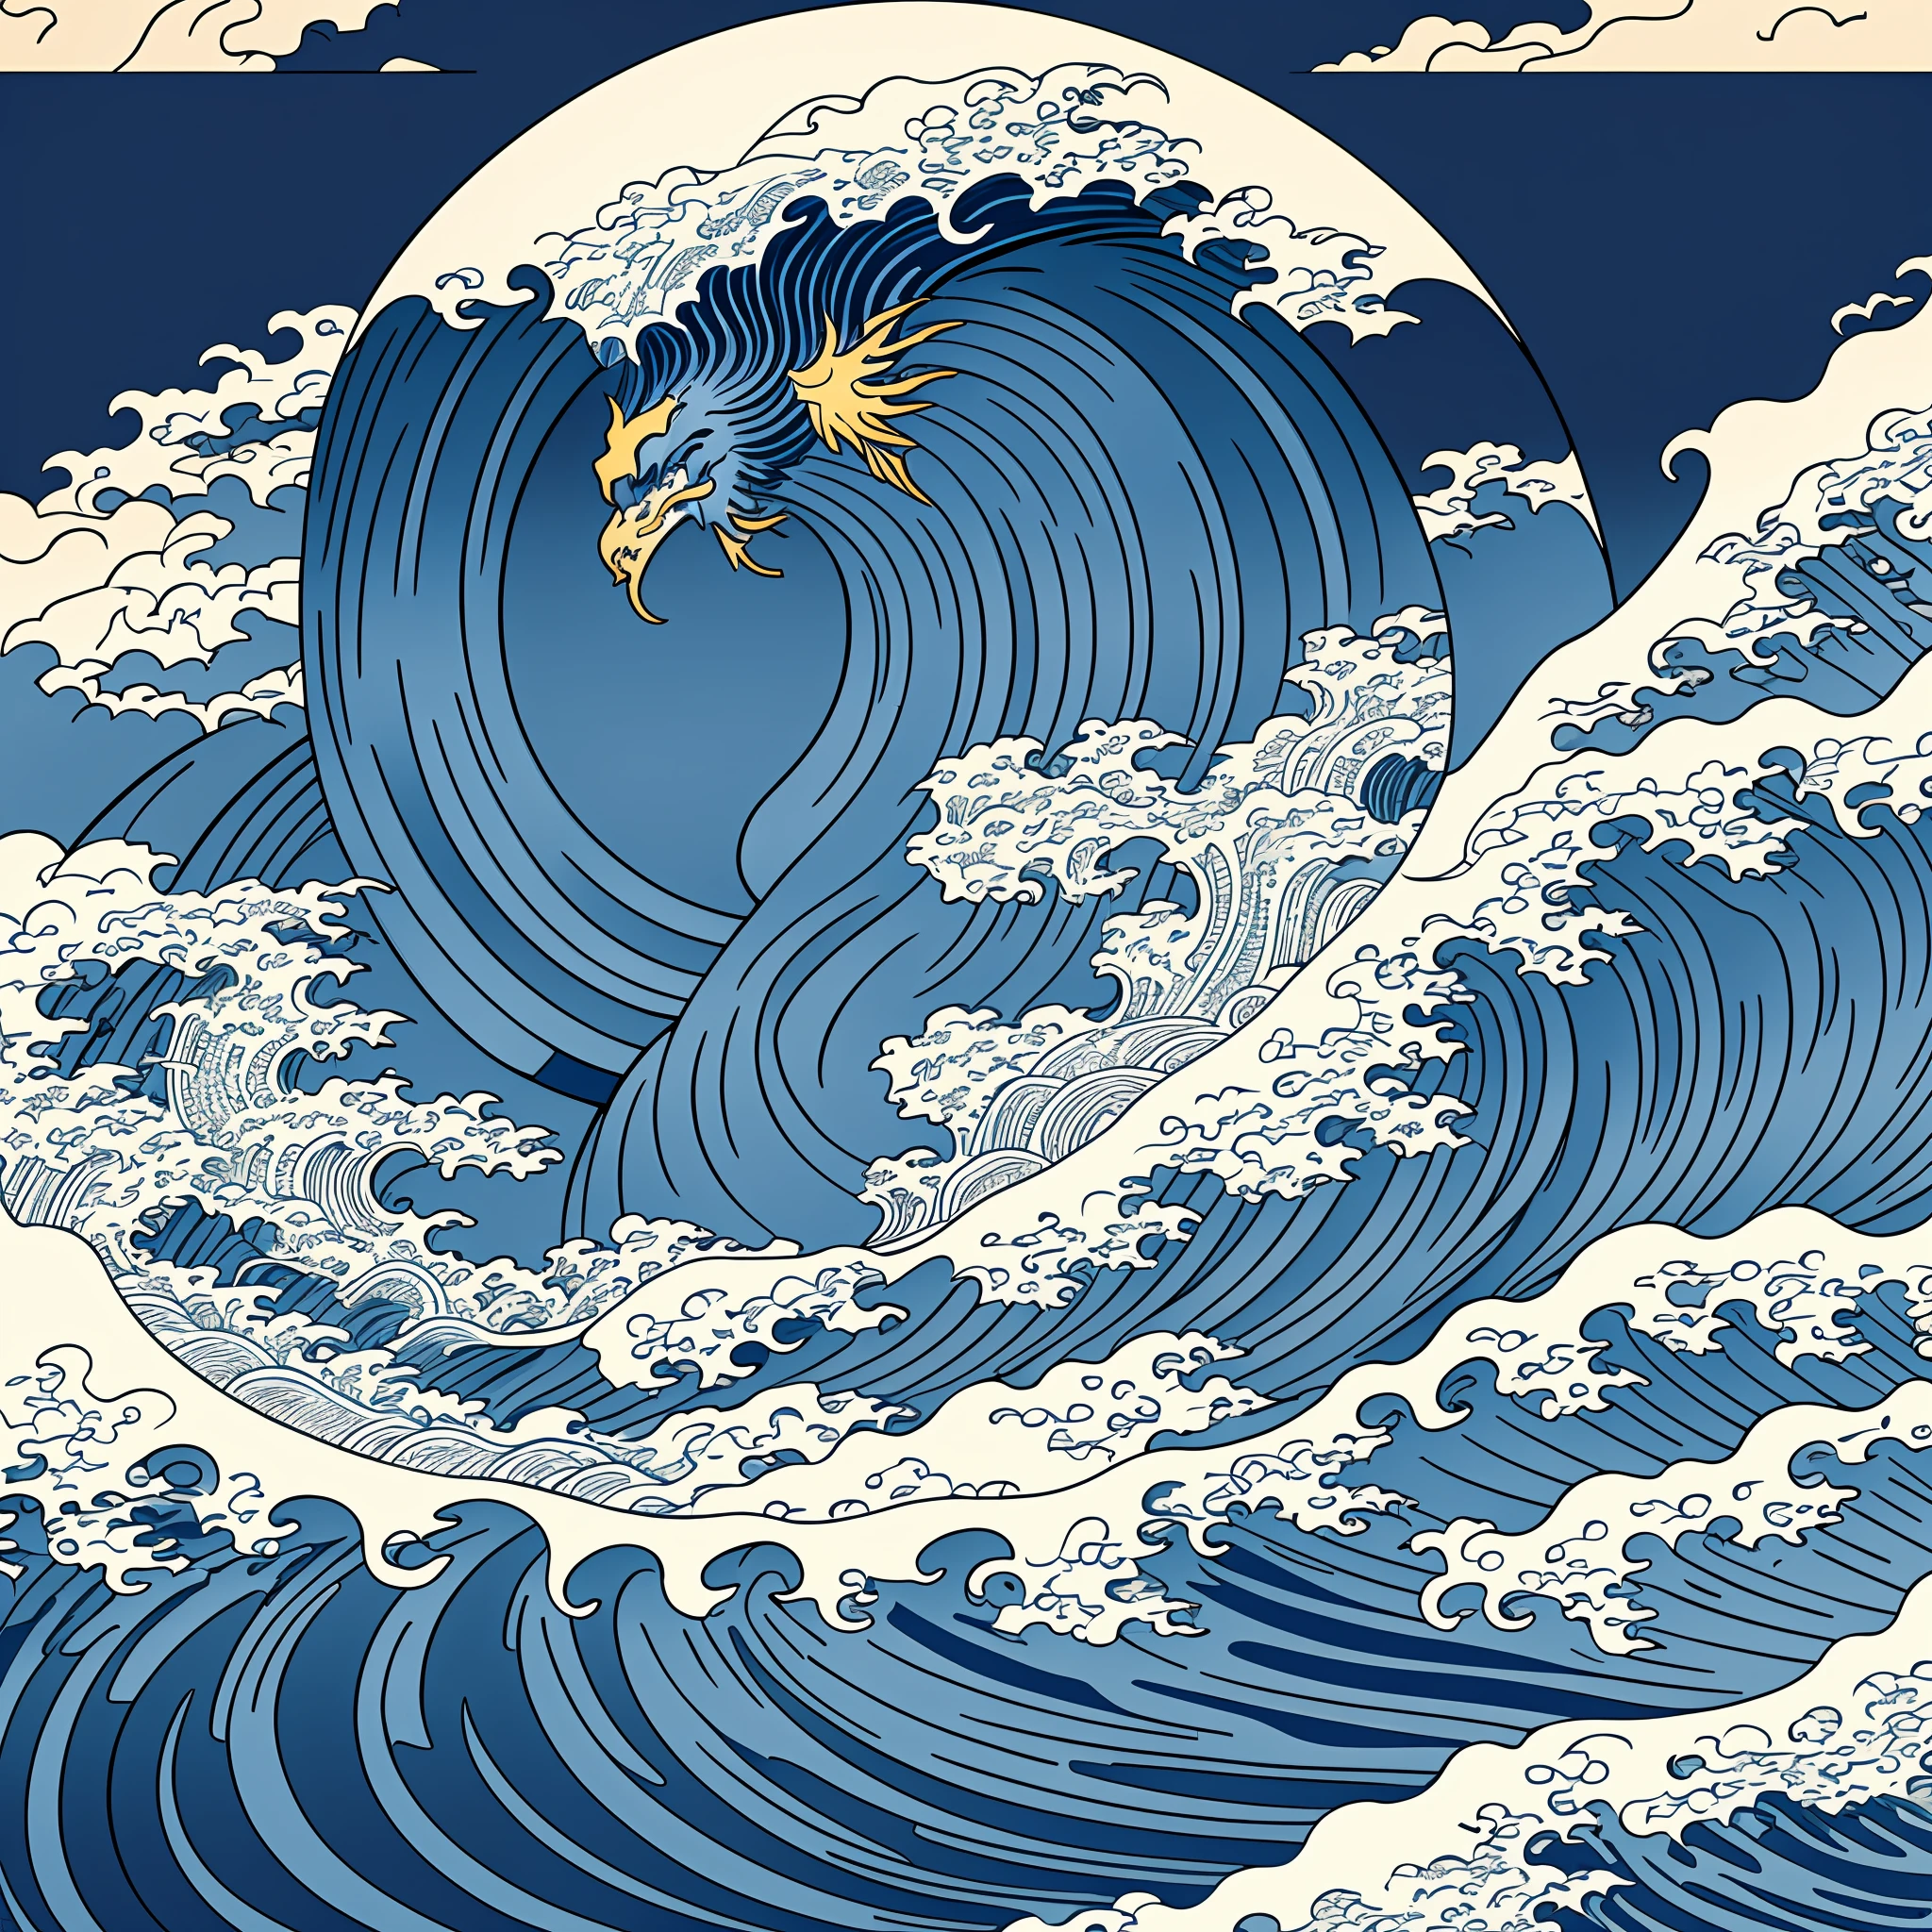 การออกแบบลายเส้นสไตล์ Katsushika Hokusai, การออกแบบลวดลายคลื่นหยาบสีน้ำเงินเข้มสไตล์โฮคุไซ. ปลายคลื่นเป็นหัวมังกร, คุณภาพสูงสุด, masterpiece high resolution สไตล์อุกิโยะ. สไตล์ศิลปะ, 1:1, สไตล์อุกิโยะ, ศิลปะเวกเตอร์ 3 มิติ, อะโดบี อิลลัสเตรเตอร์, ความละเอียด 4K, พื้นหลังที่งดงามเท่านั้น